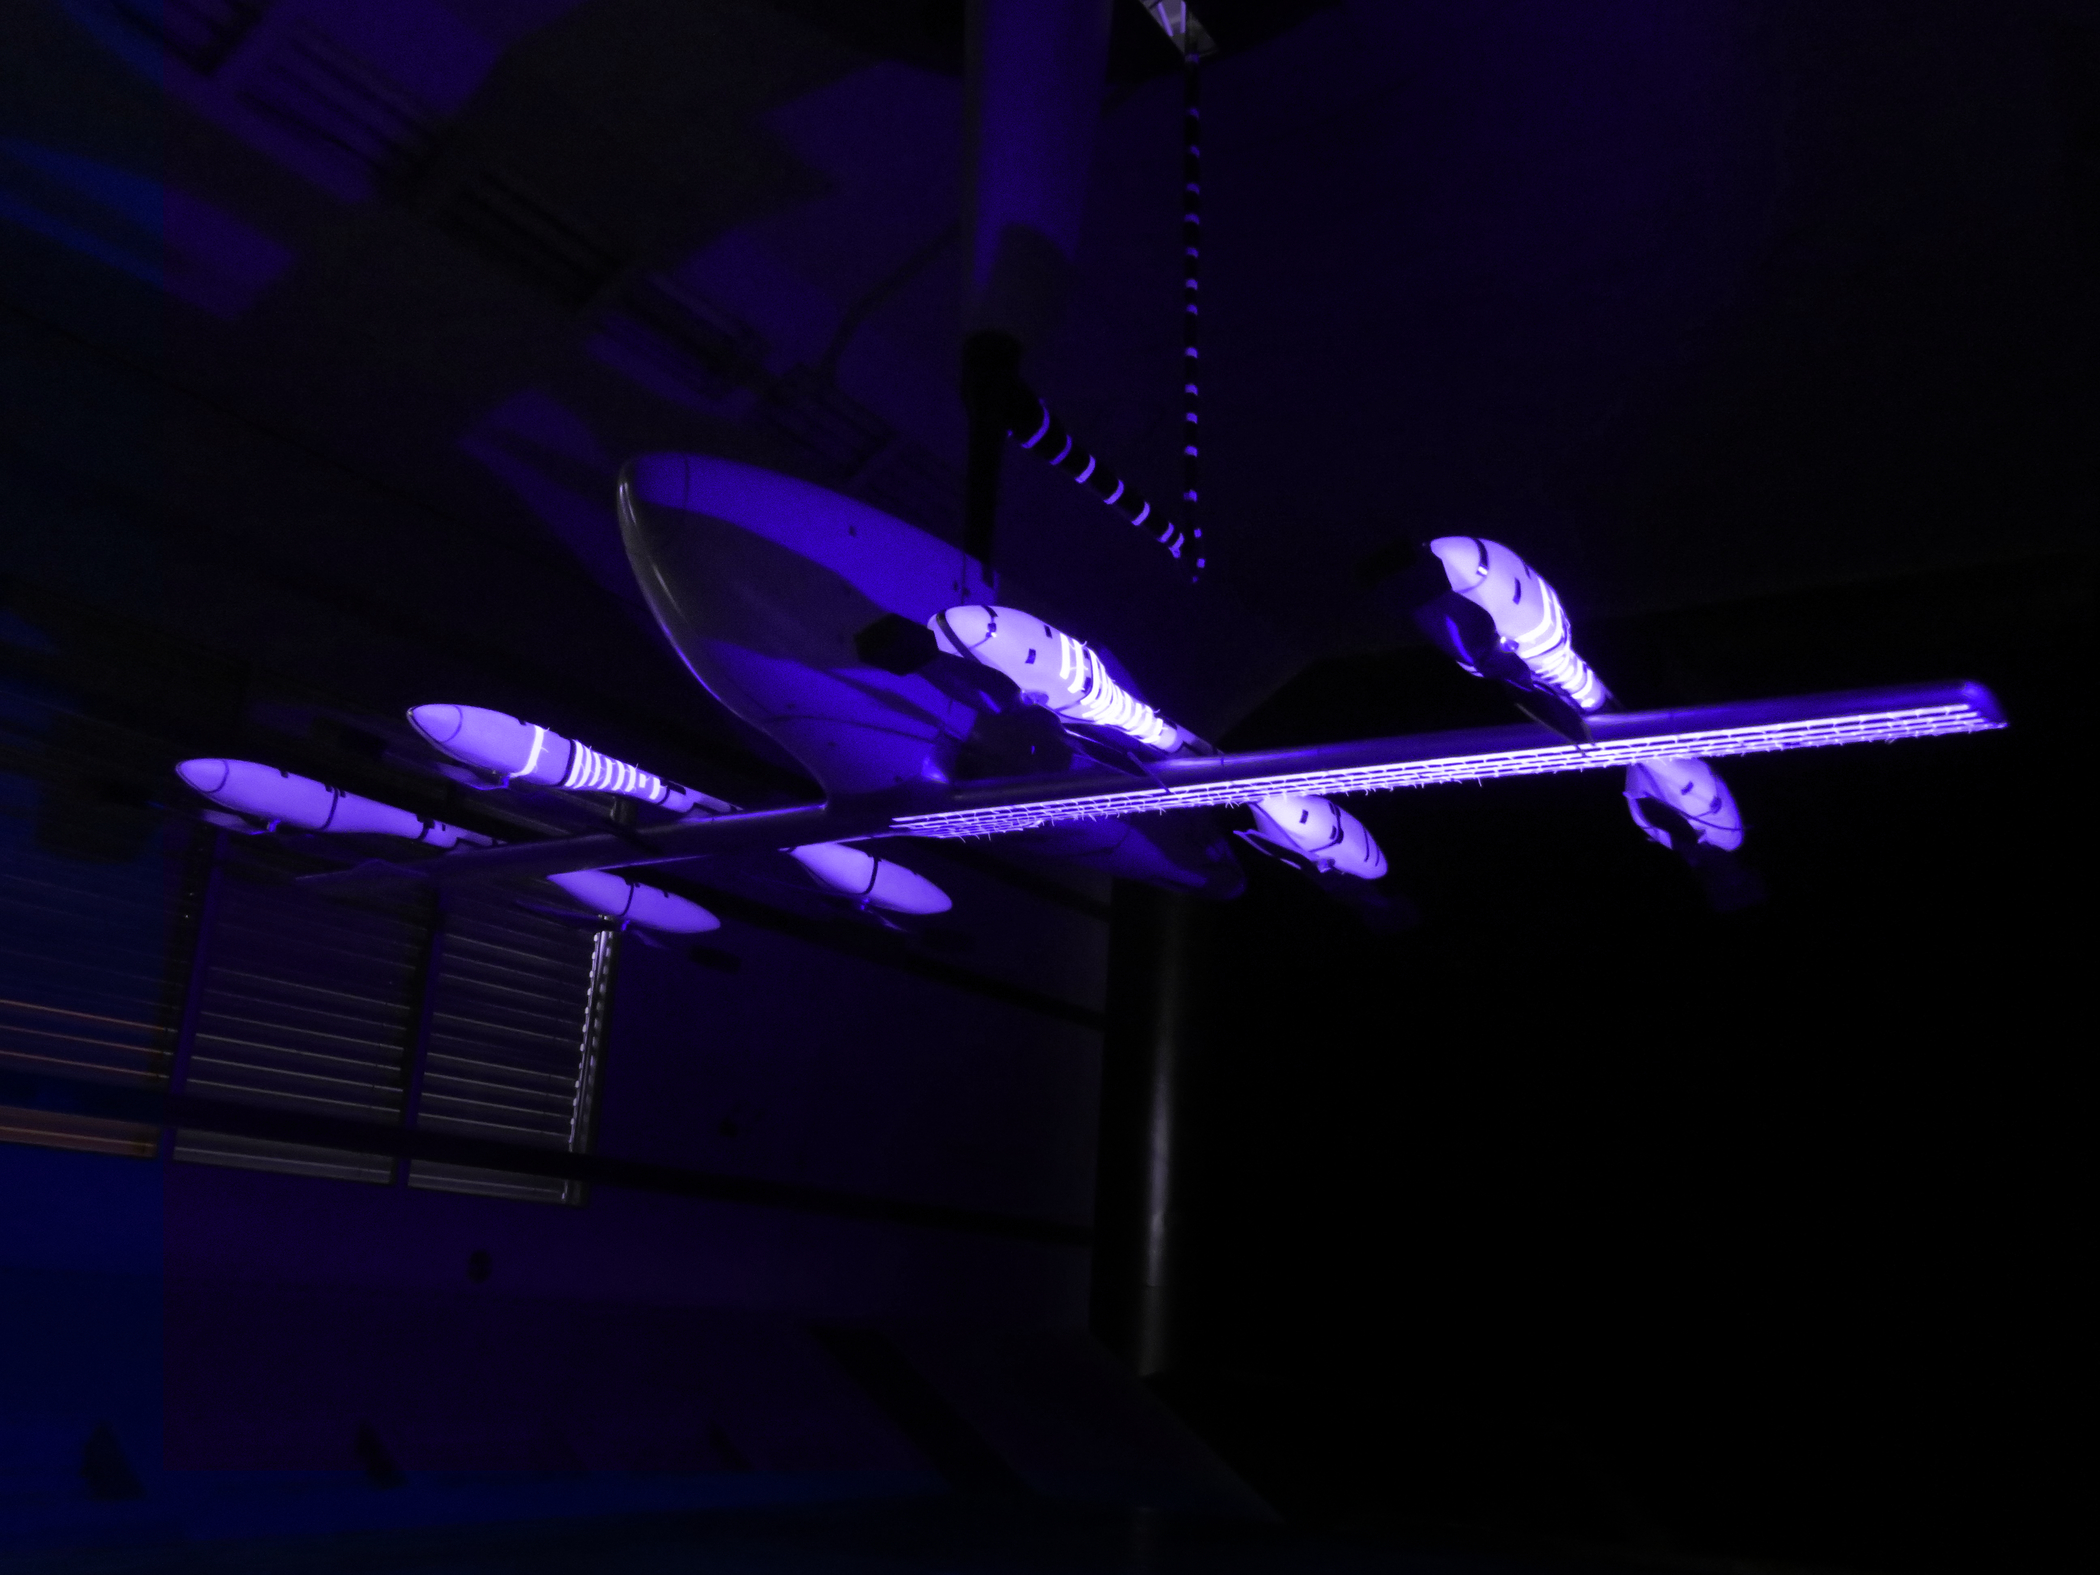 Eve, da Embraer, conclui testes com ‘carro voador’ eVTOL em túnel de vento. Na imagem: 'Carro voador' da Eve, empresa da Embraer de eVTOLs, conclui teste em túnel de vento (Foto: Divulgação Eve)